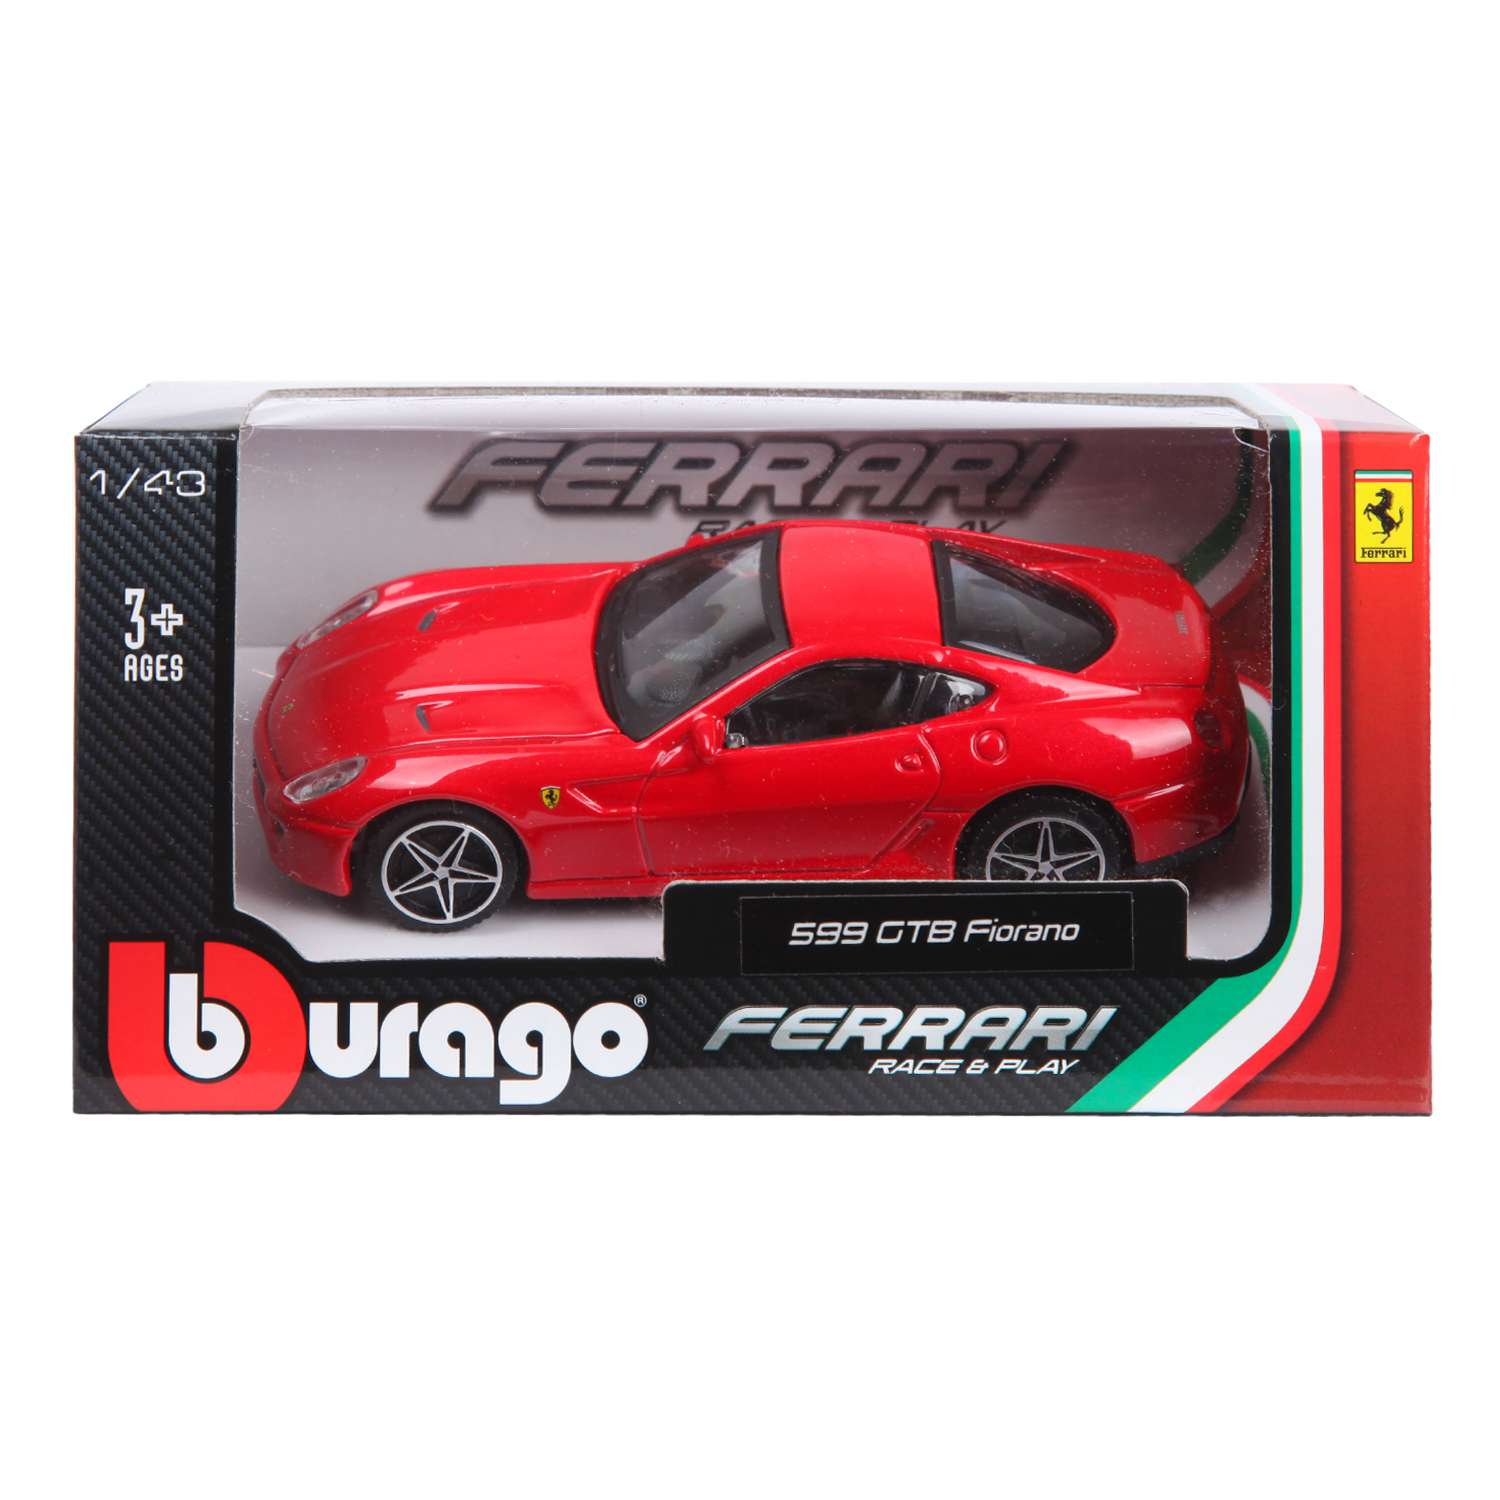 Машина BBurago 1:43 Ferrari 599 Gtb Fioranohgte 18-31104W 18-31104W - фото 2